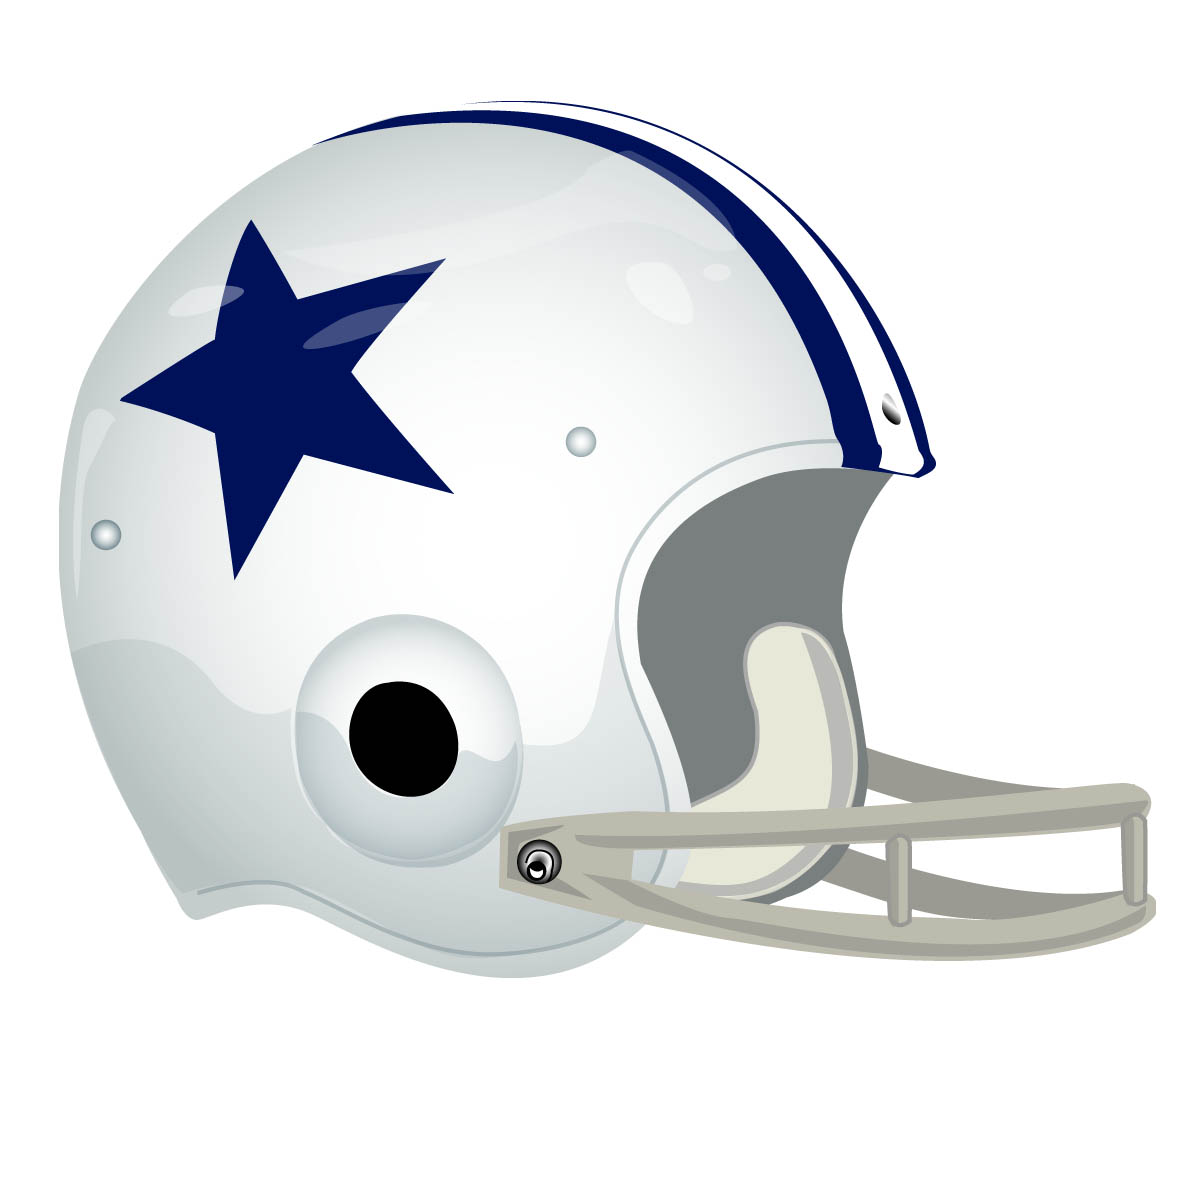 Cowboys Helmet Drawing at GetDrawings Free download